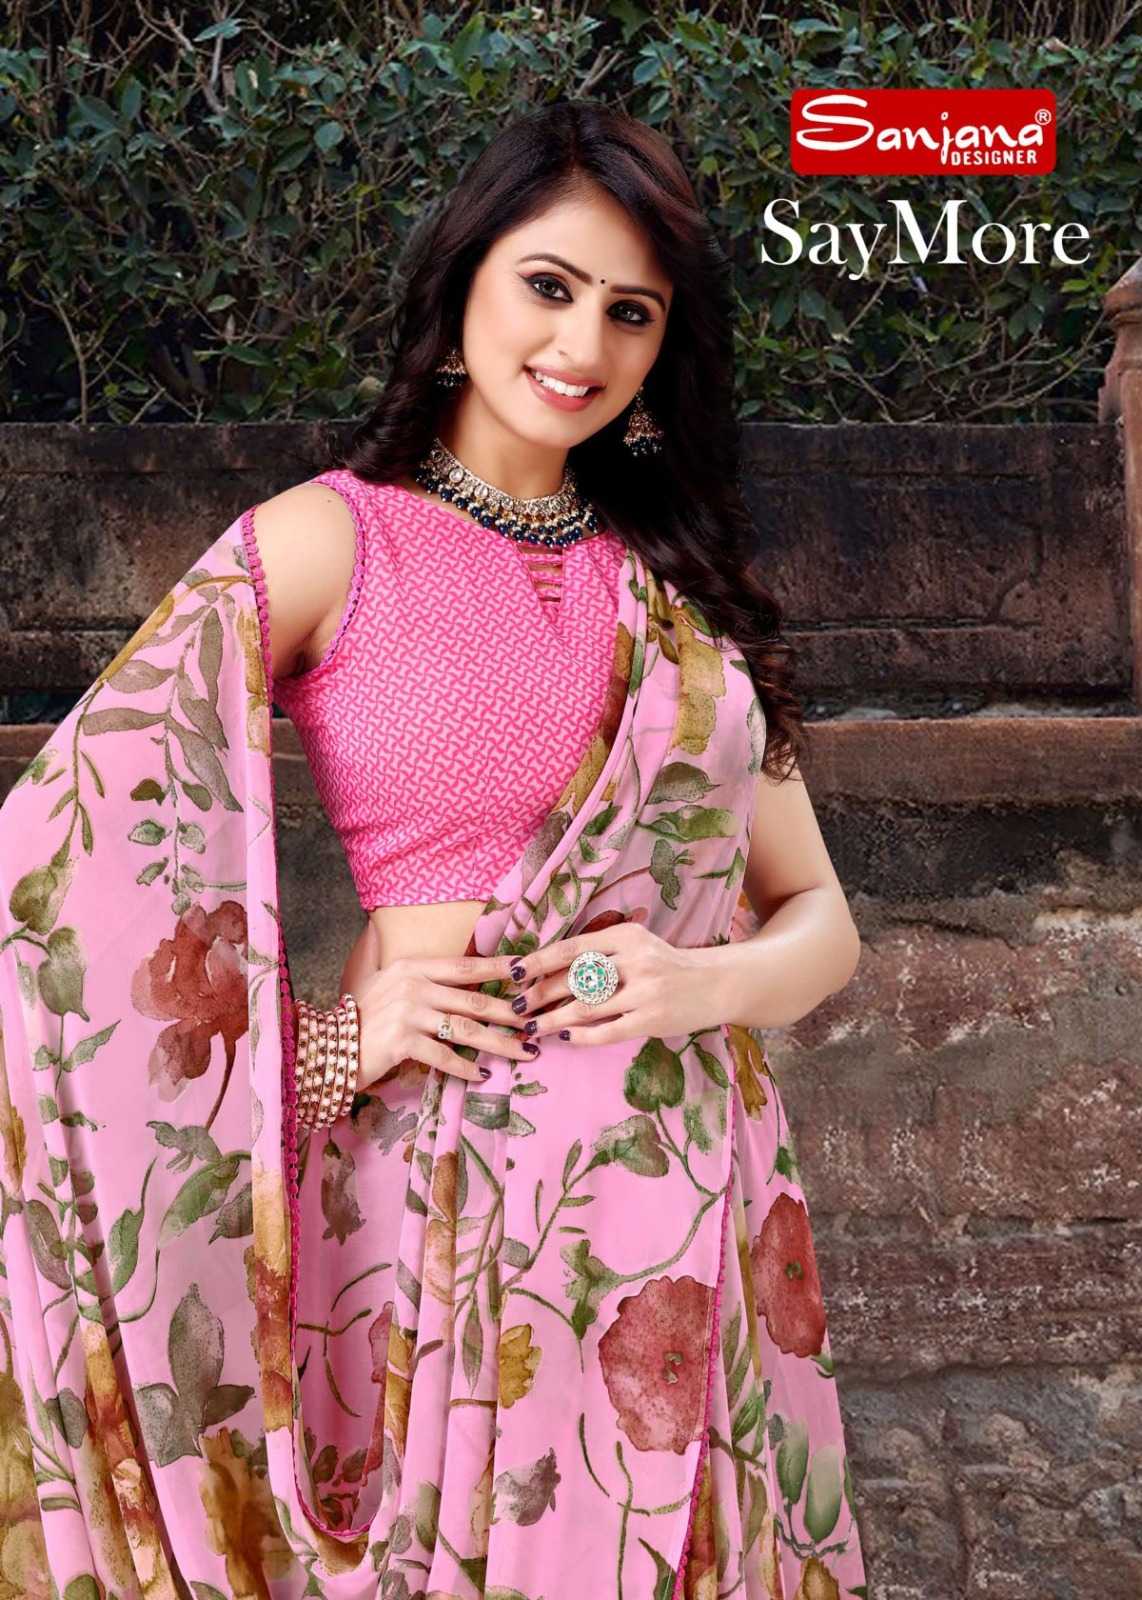 sanjana designer saymore casual weightless sarees catalog